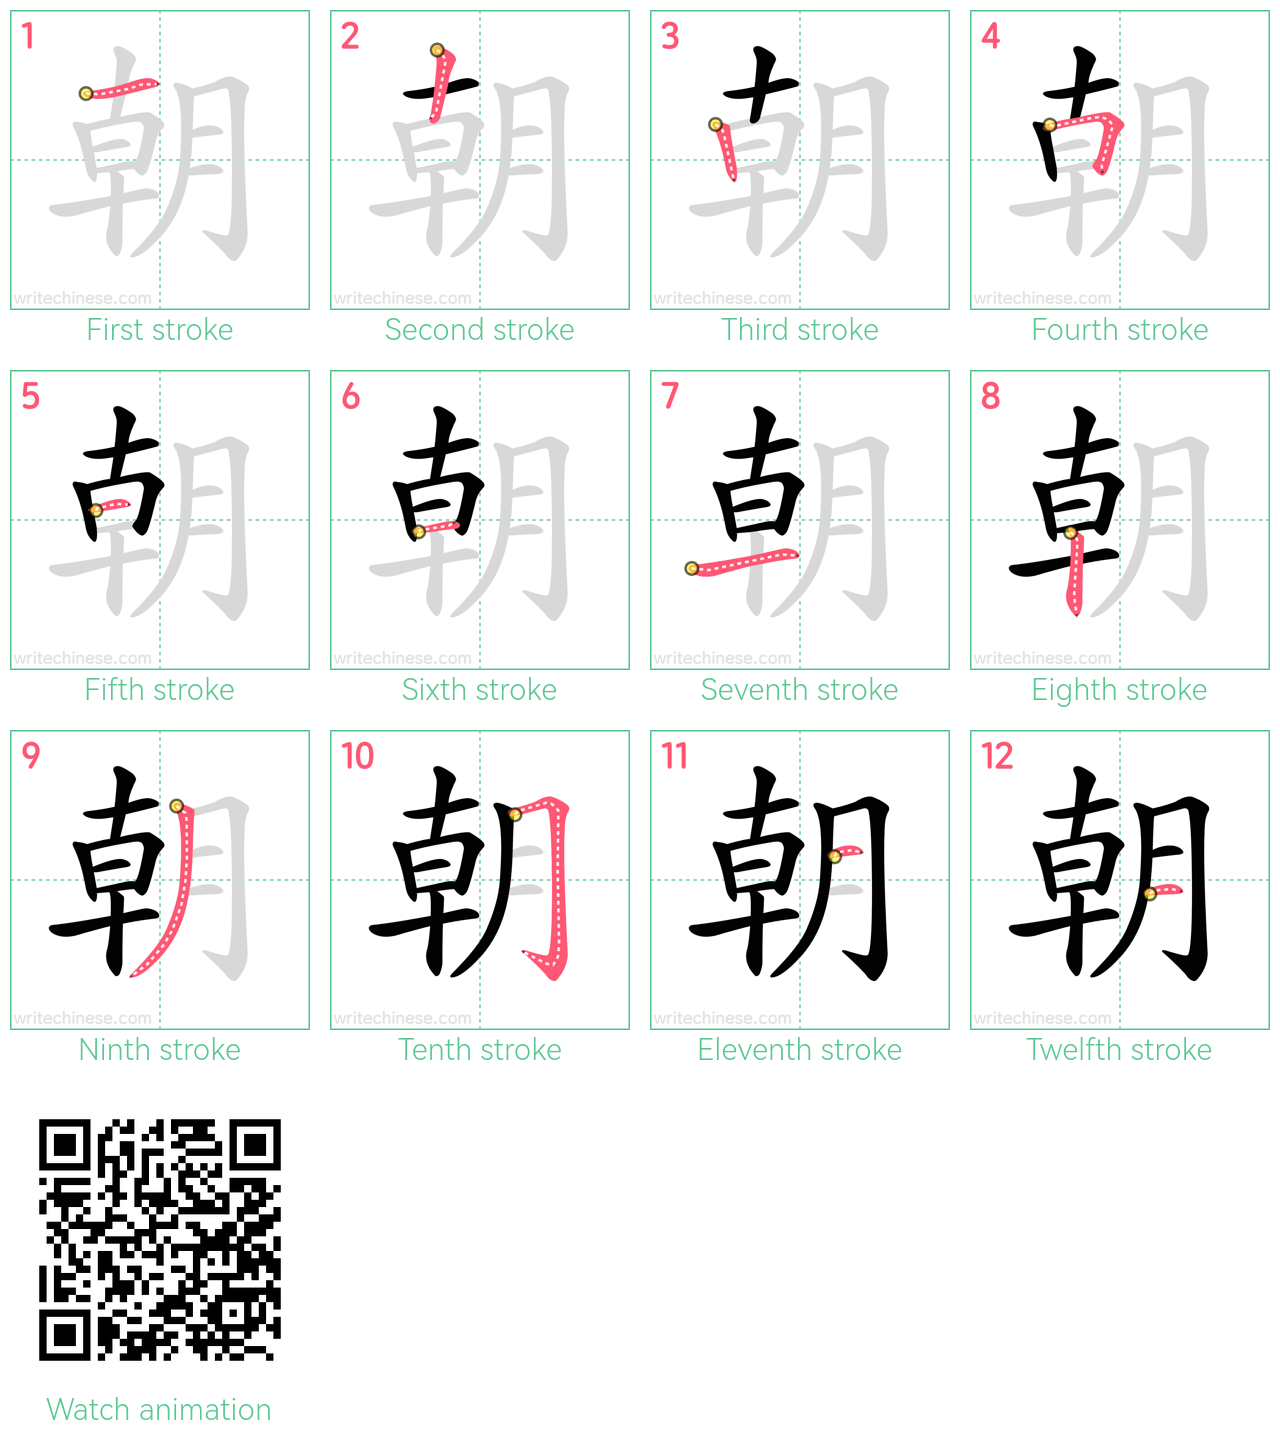 朝 step-by-step stroke order diagrams